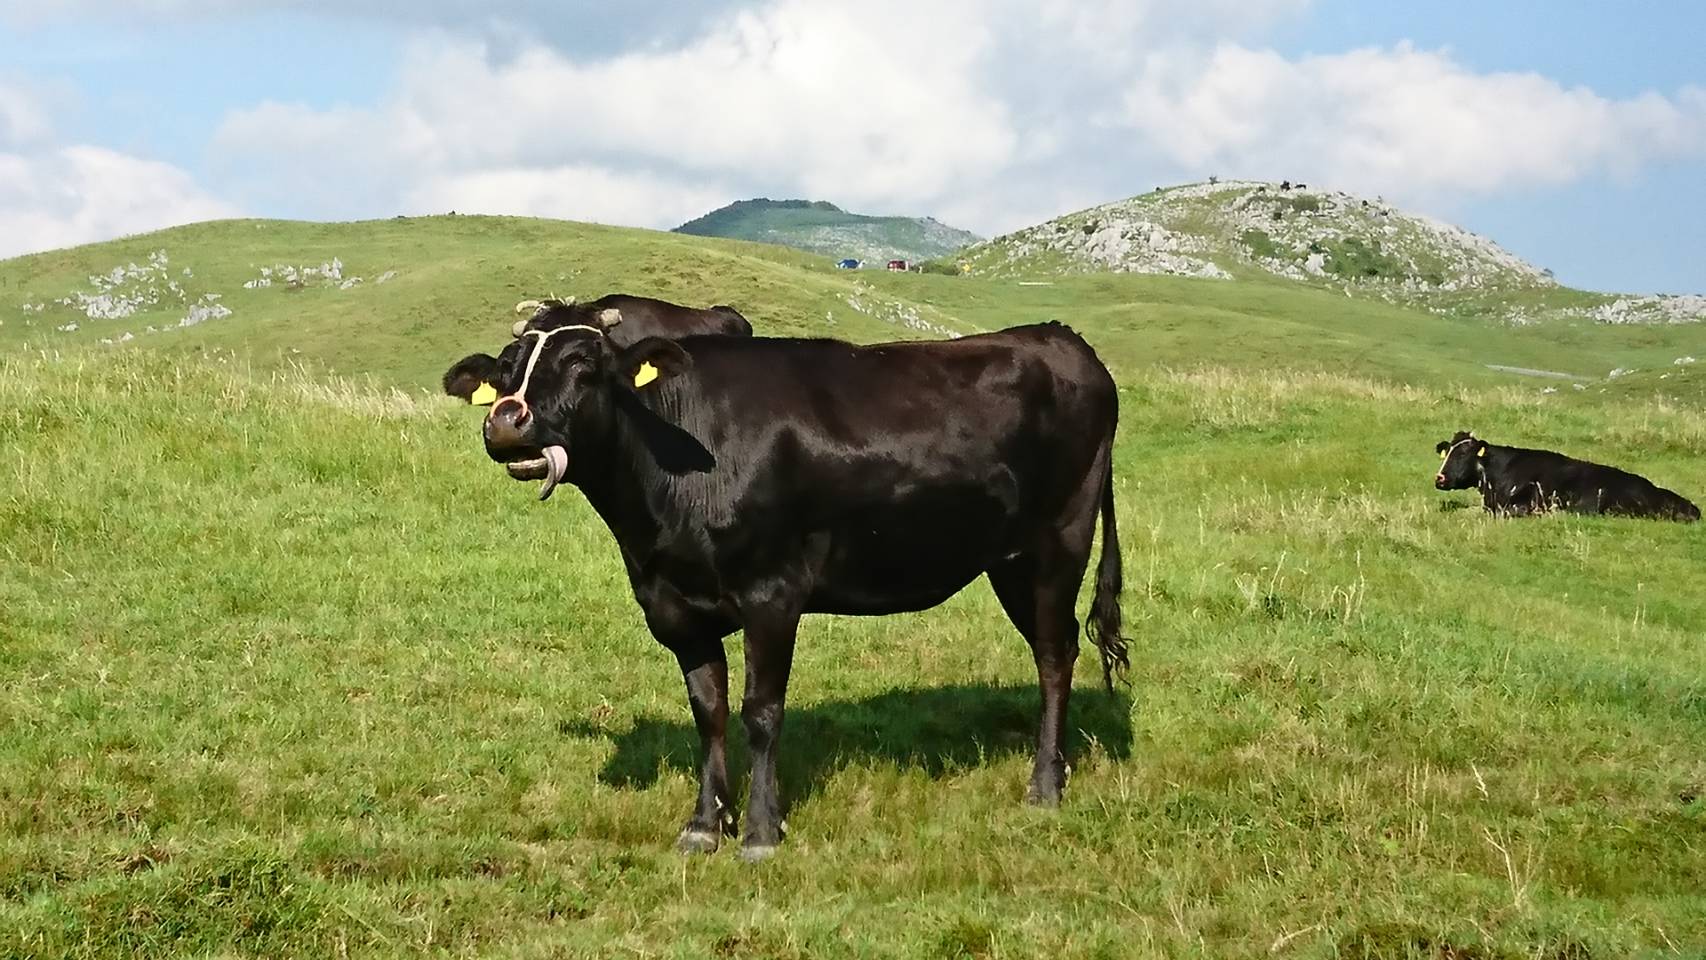 足柄牛の写真です。